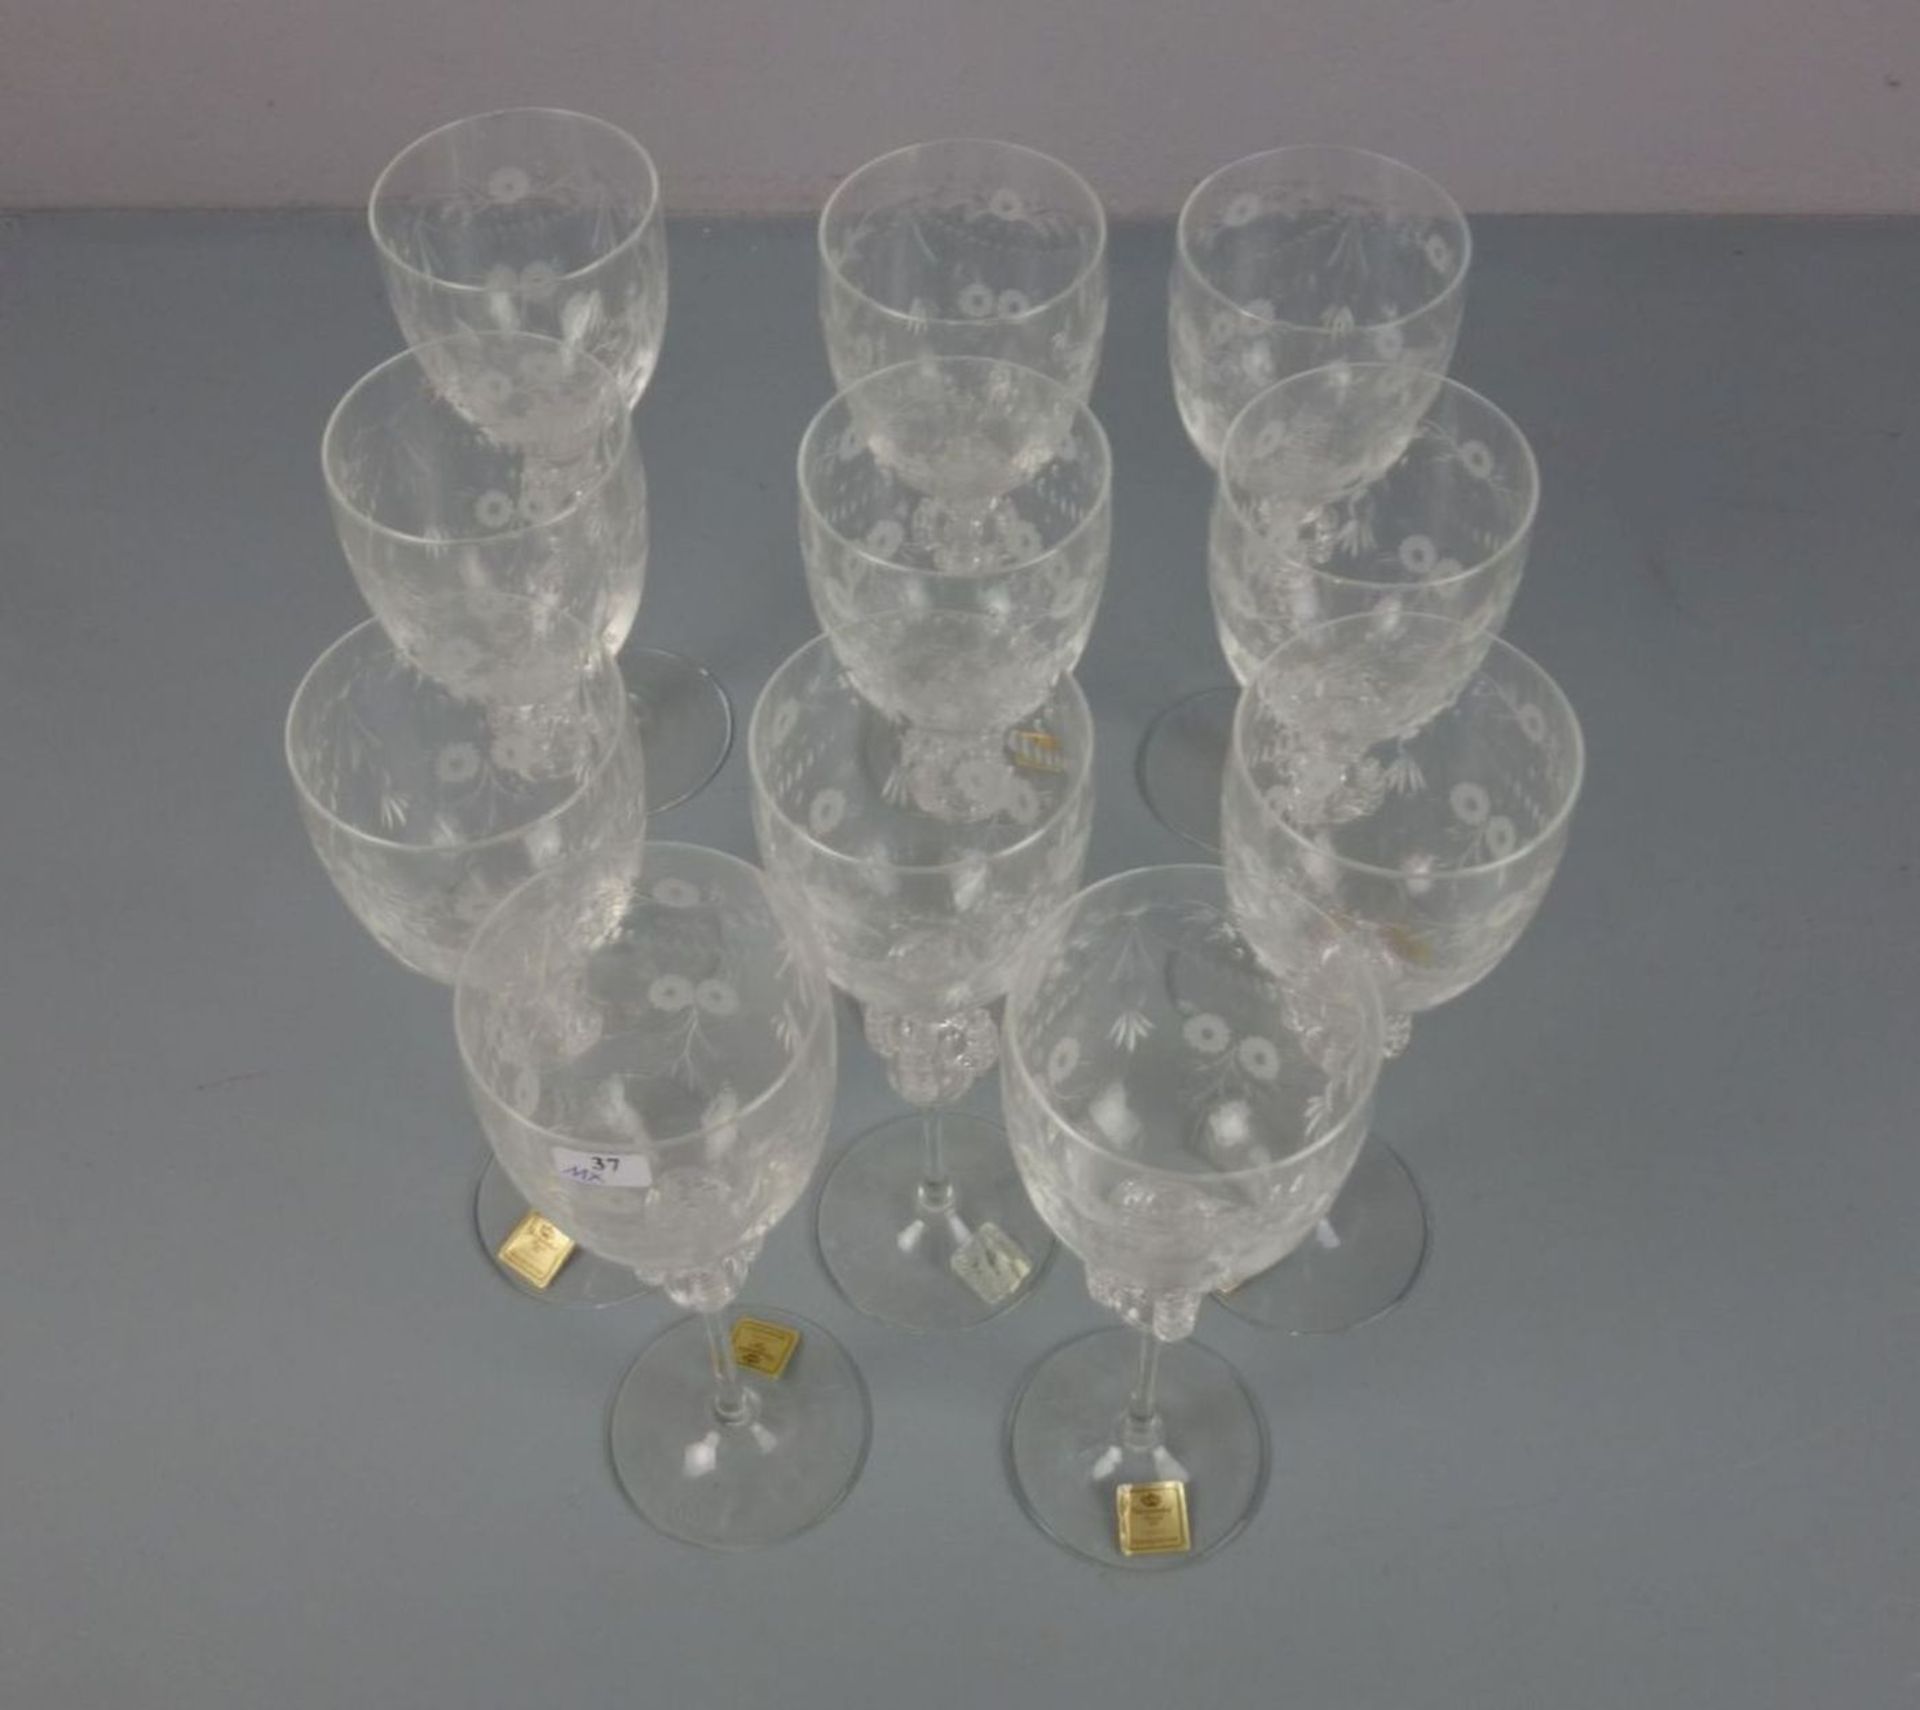 11 GLÄSER / WEINGLÄSER / 11 wine glasses, Manufaktur Theresienthal, Zwiesel, auf dem Stand gemarkt - Bild 5 aus 5